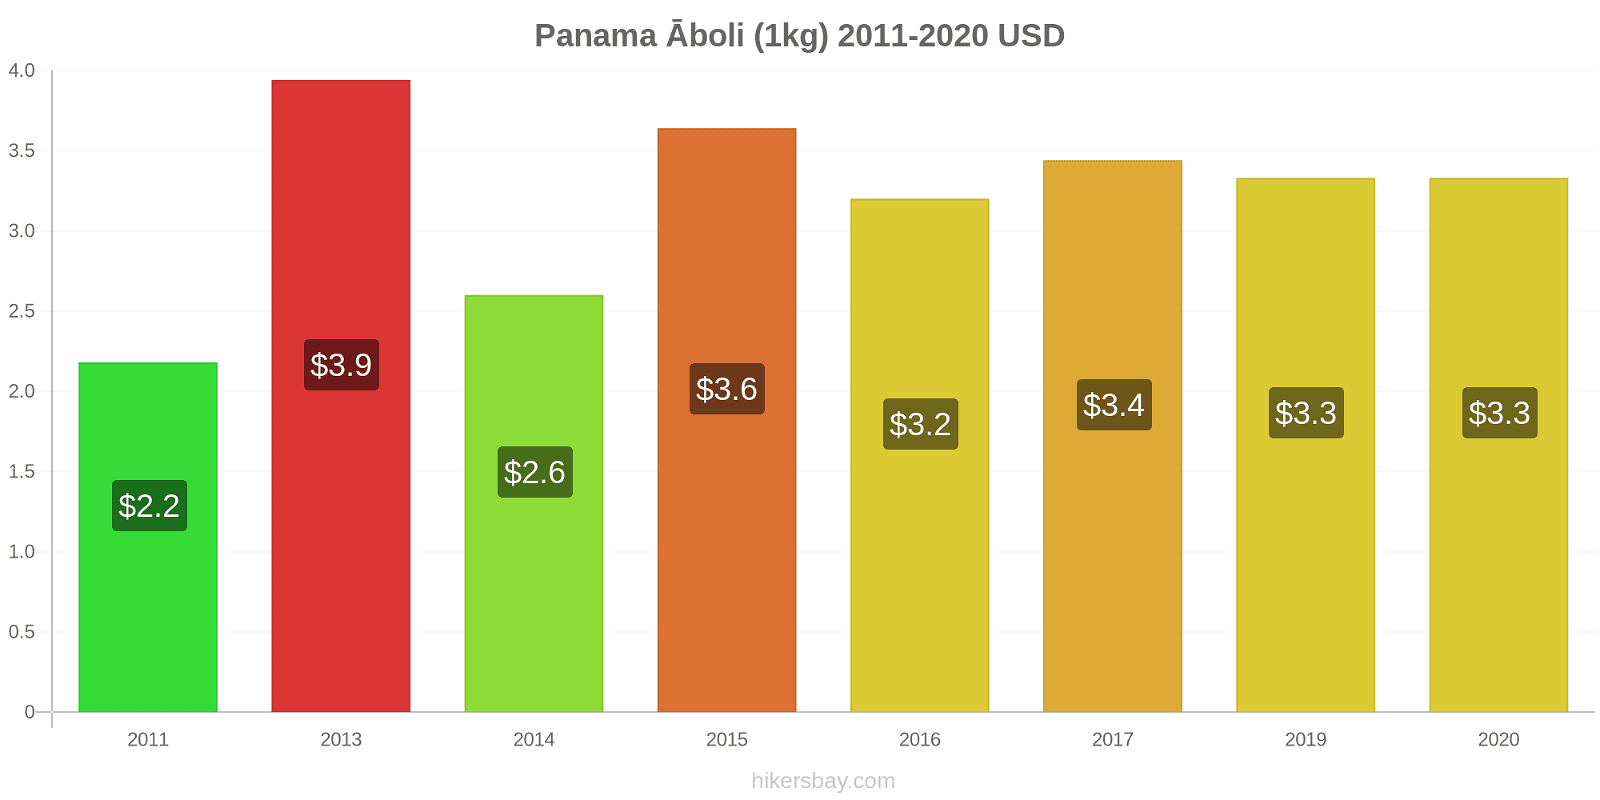 Panama cenu izmaiņas Āboli (1kg) hikersbay.com